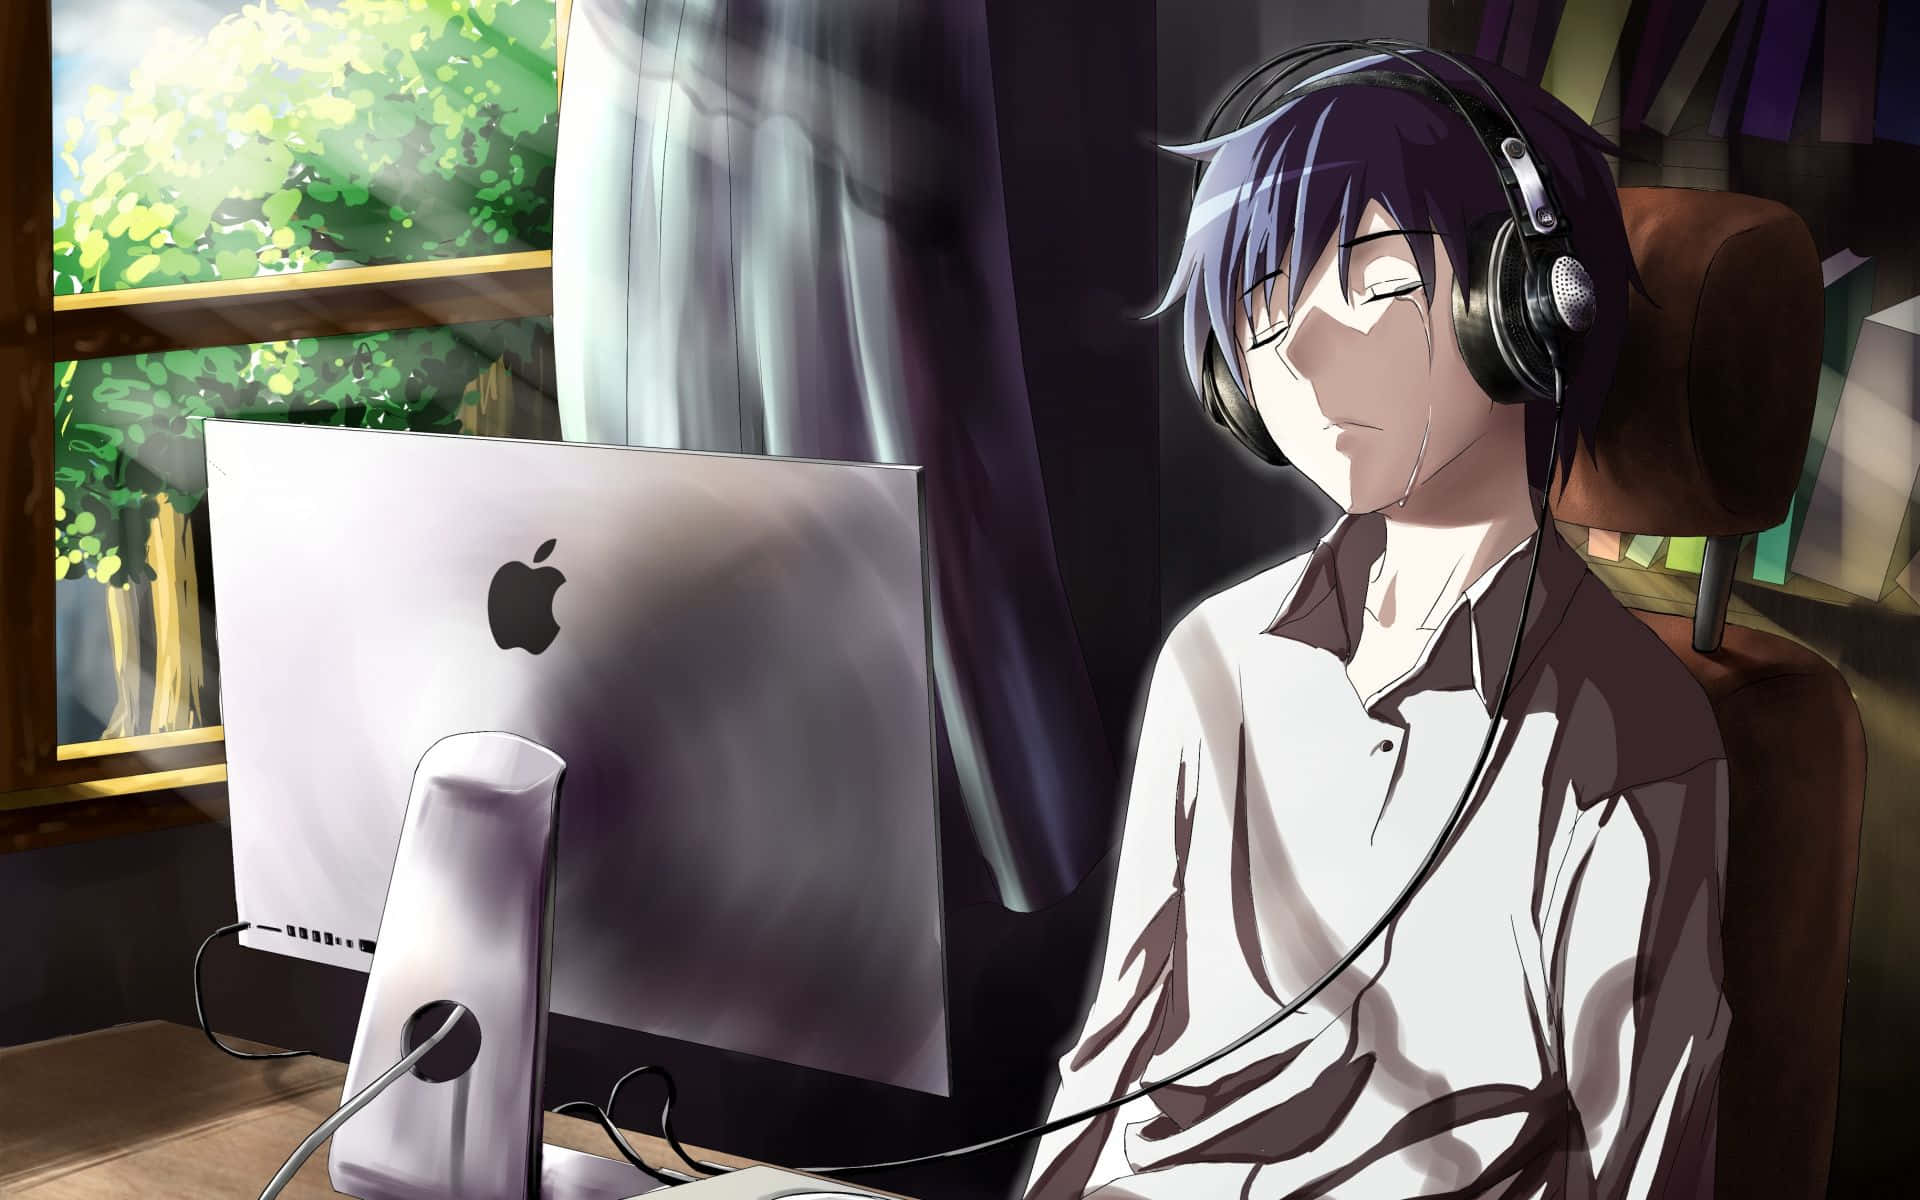 Weeping Gaming Anime Boy Art Wallpaper